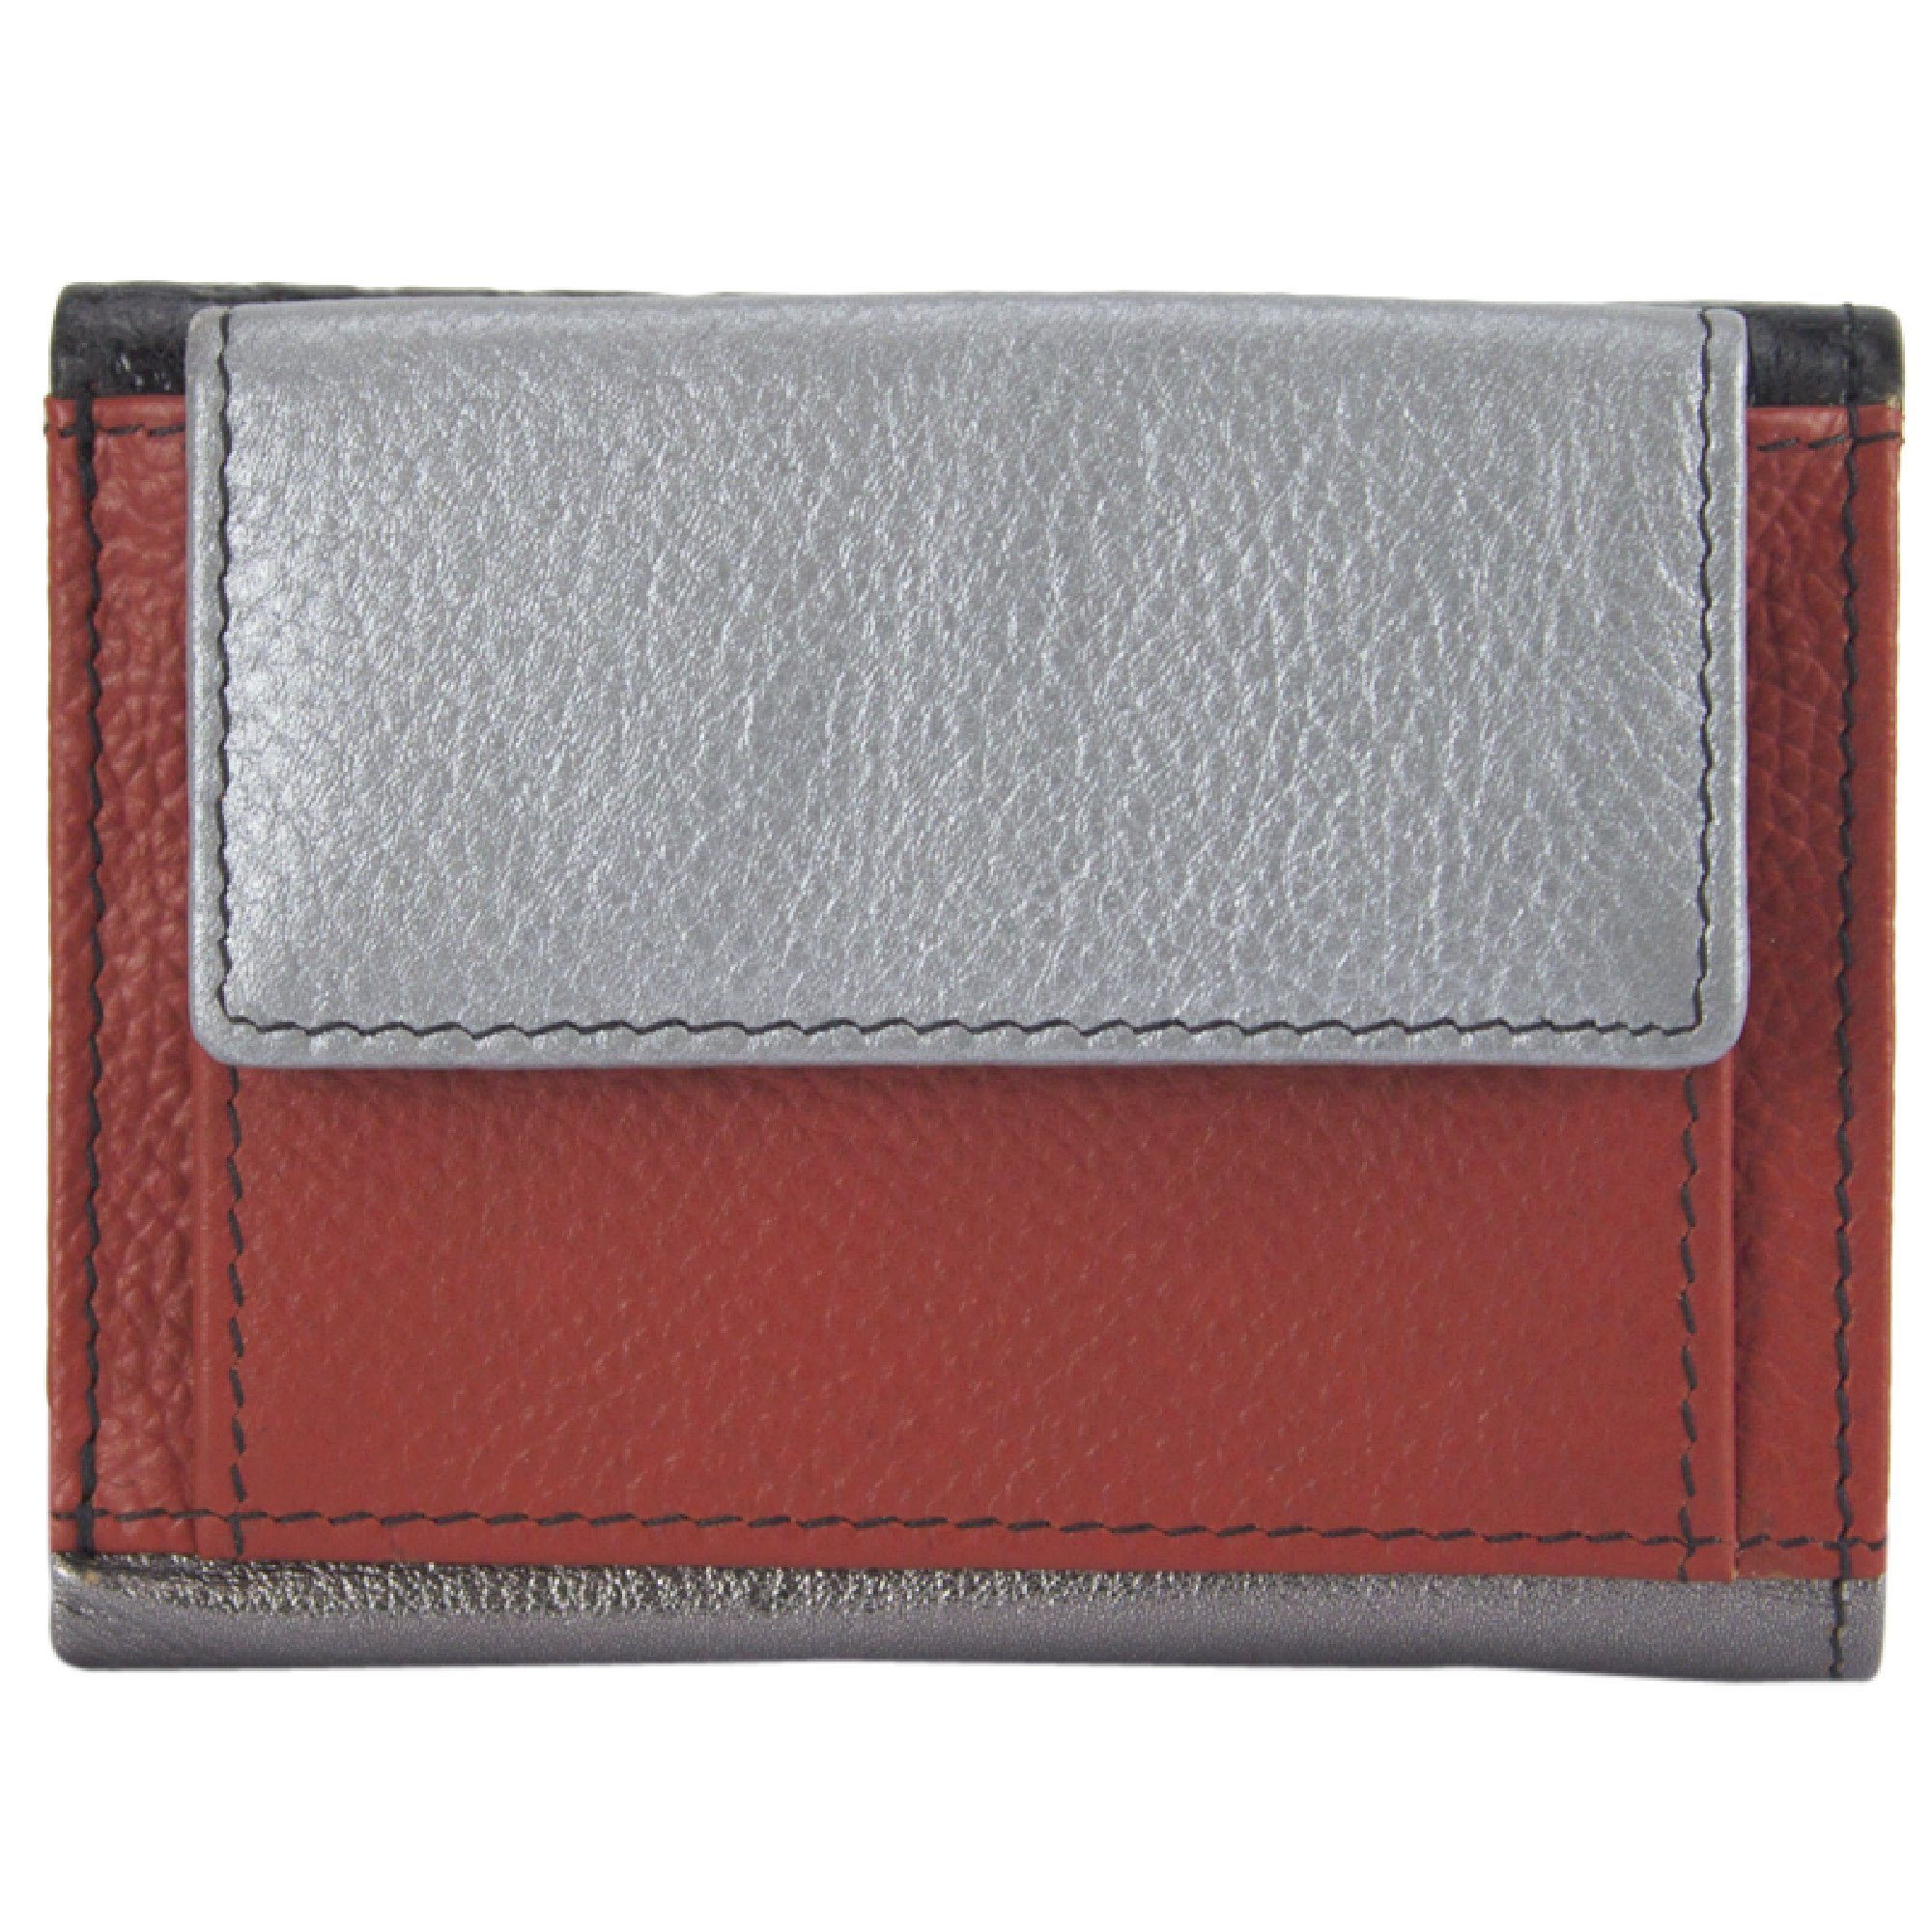 Sunsa Mini Geldbörse Mini klein Leder Geldbörse Geldbeutel Portemonnaie Brieftasche, echt Leder, aus recycelten Lederresten, mit RFID-Schutz, Unisex rot/silber/schwarz